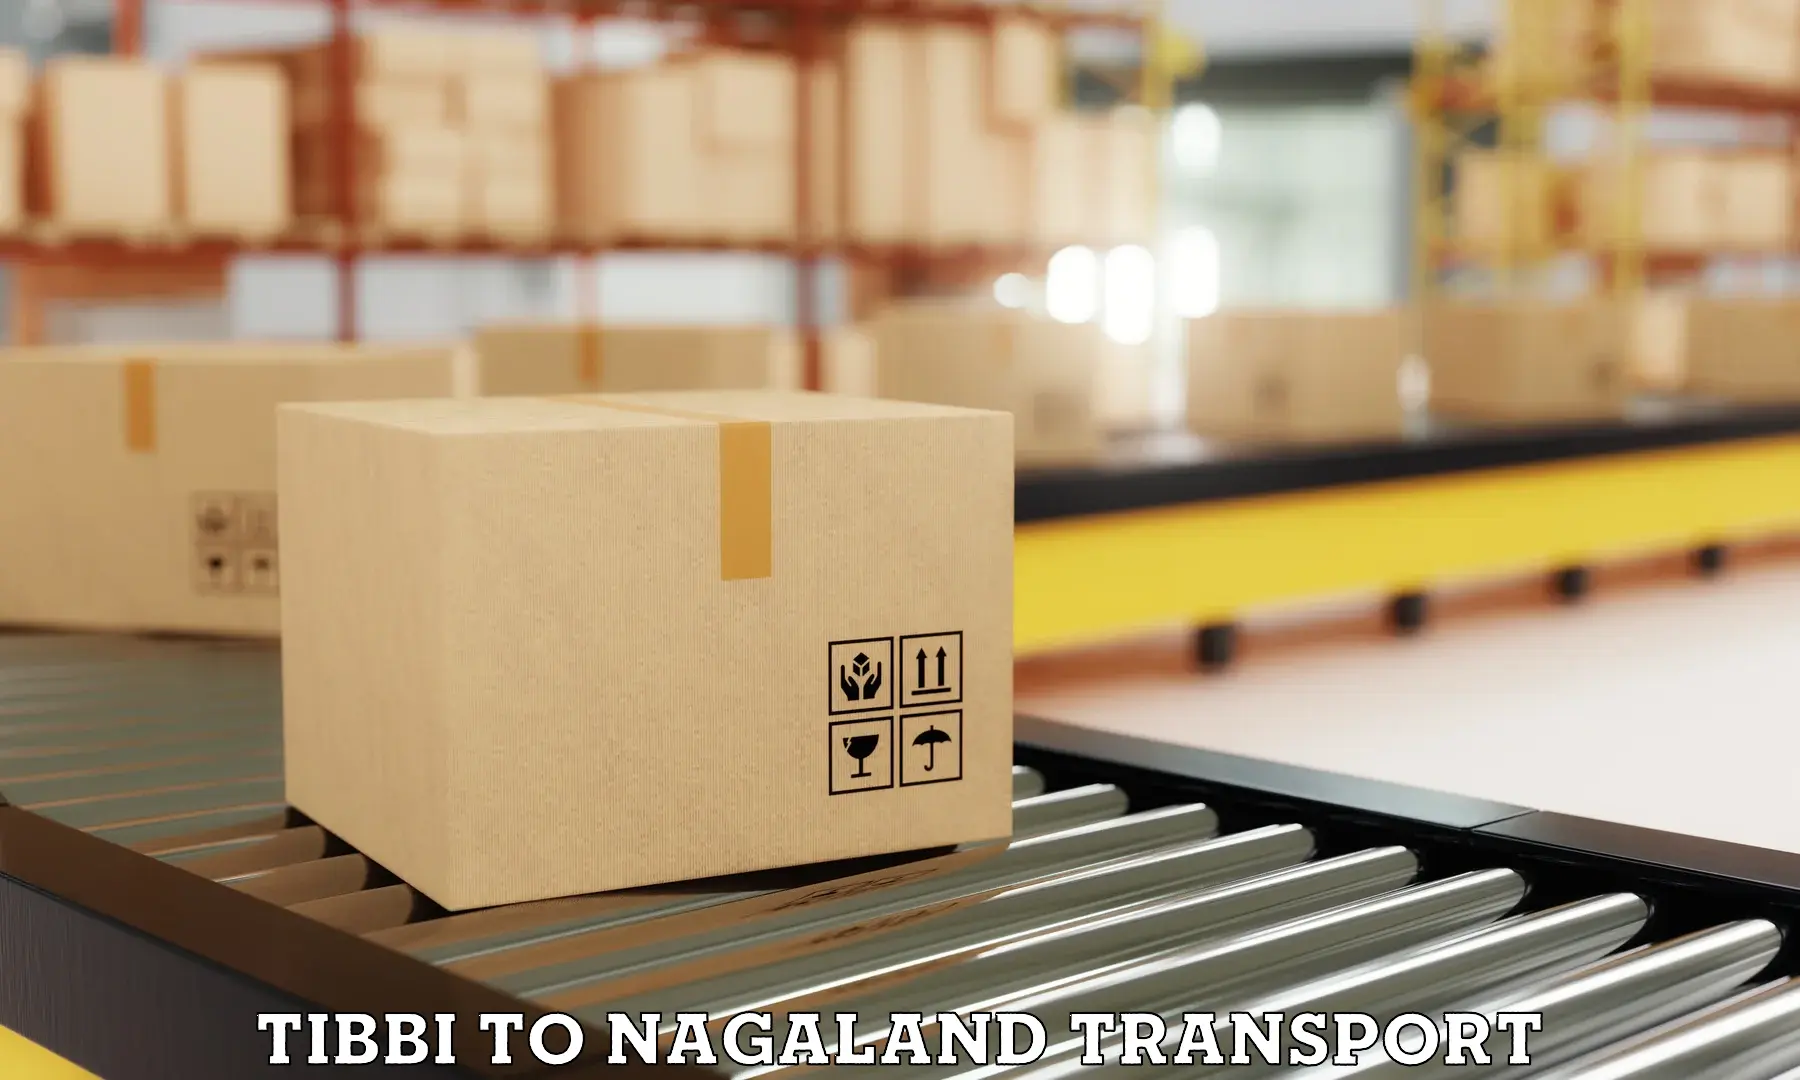 Online transport service Tibbi to NIT Nagaland